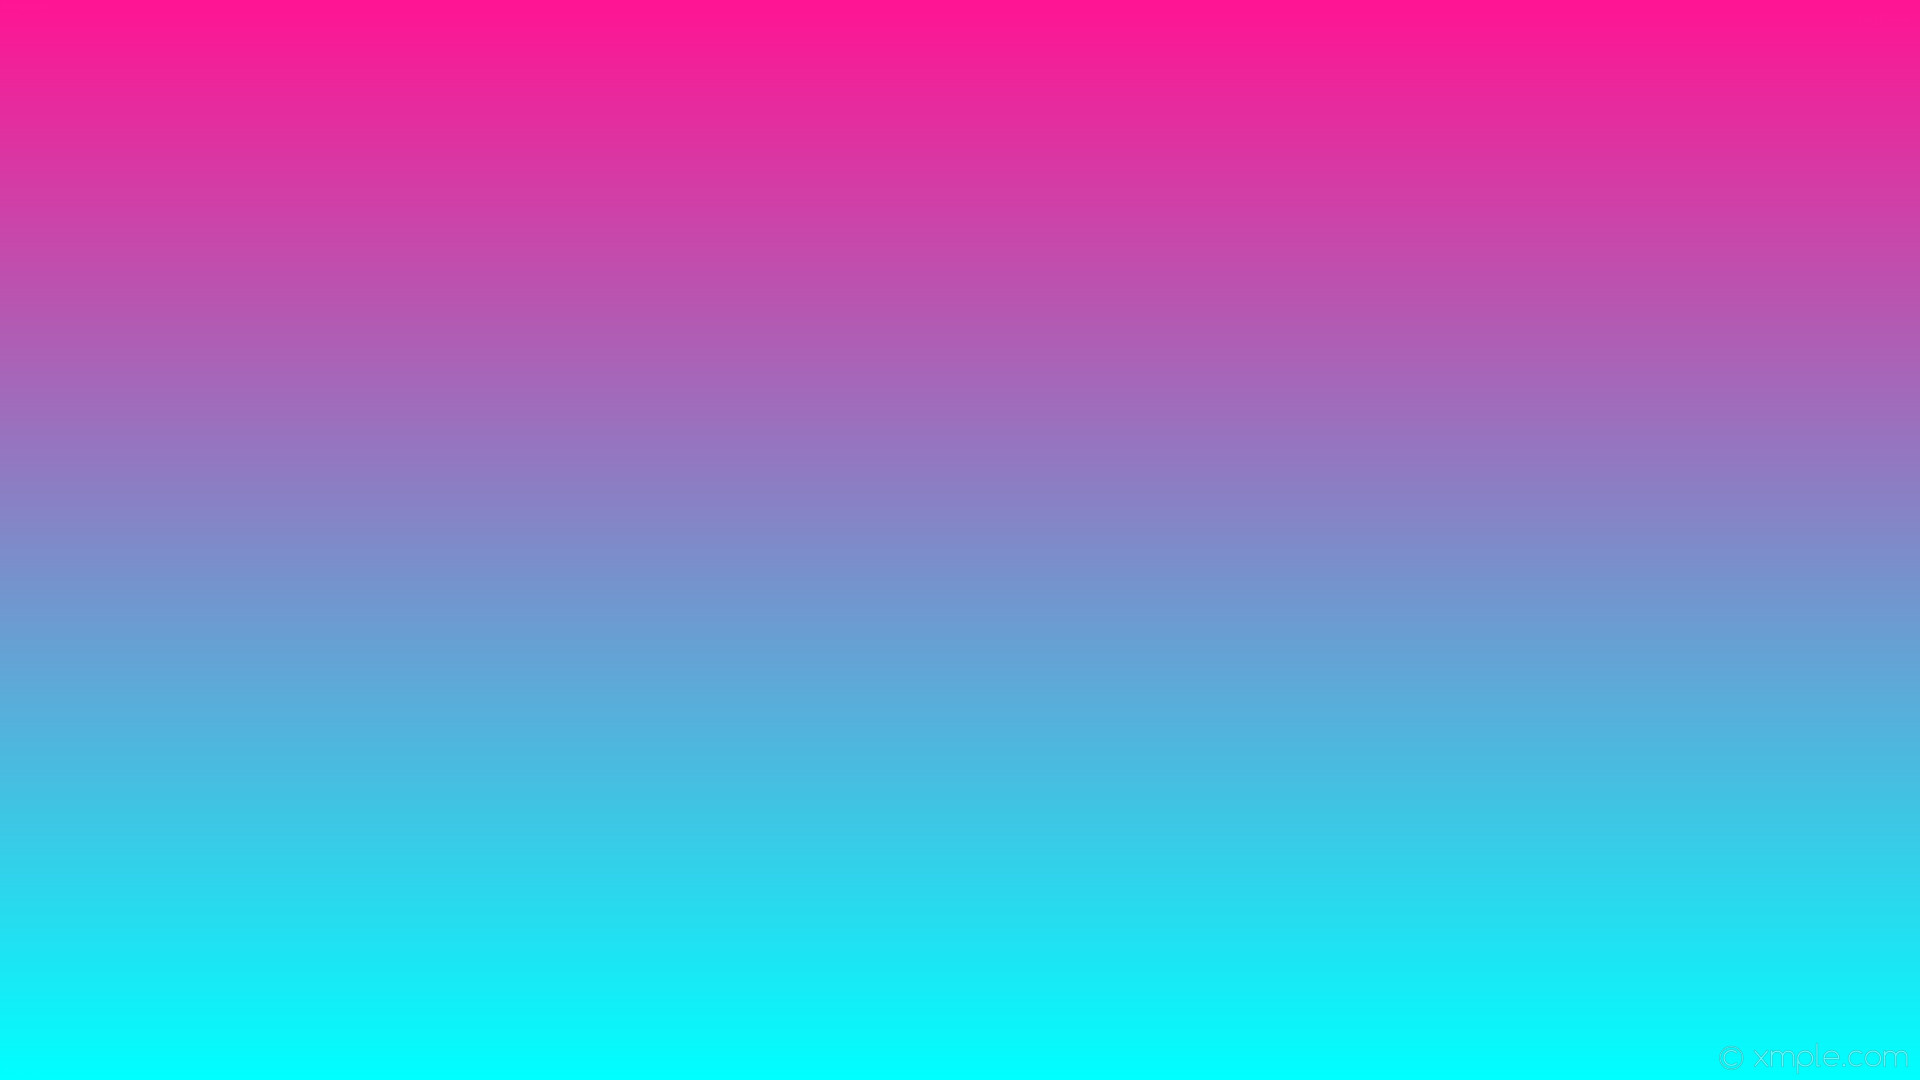 1920x1080 wallpaper blue linear gradient pink aqua cyan deep pink #00ffff #ff1493 270Â°